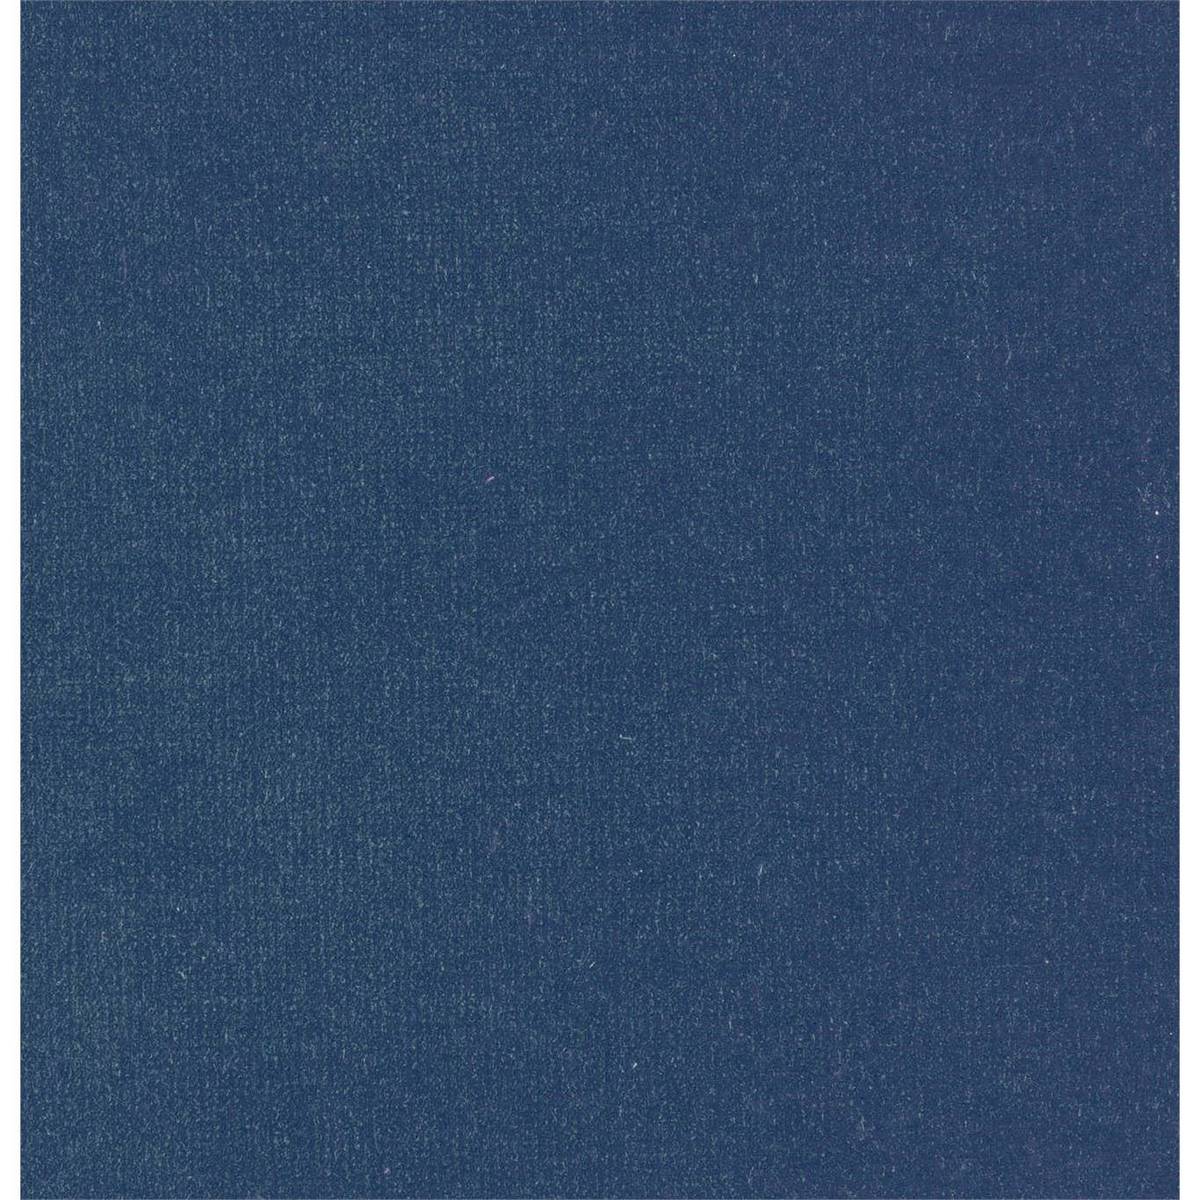 Plush Velvet Blueberry Fabric by Harlequin